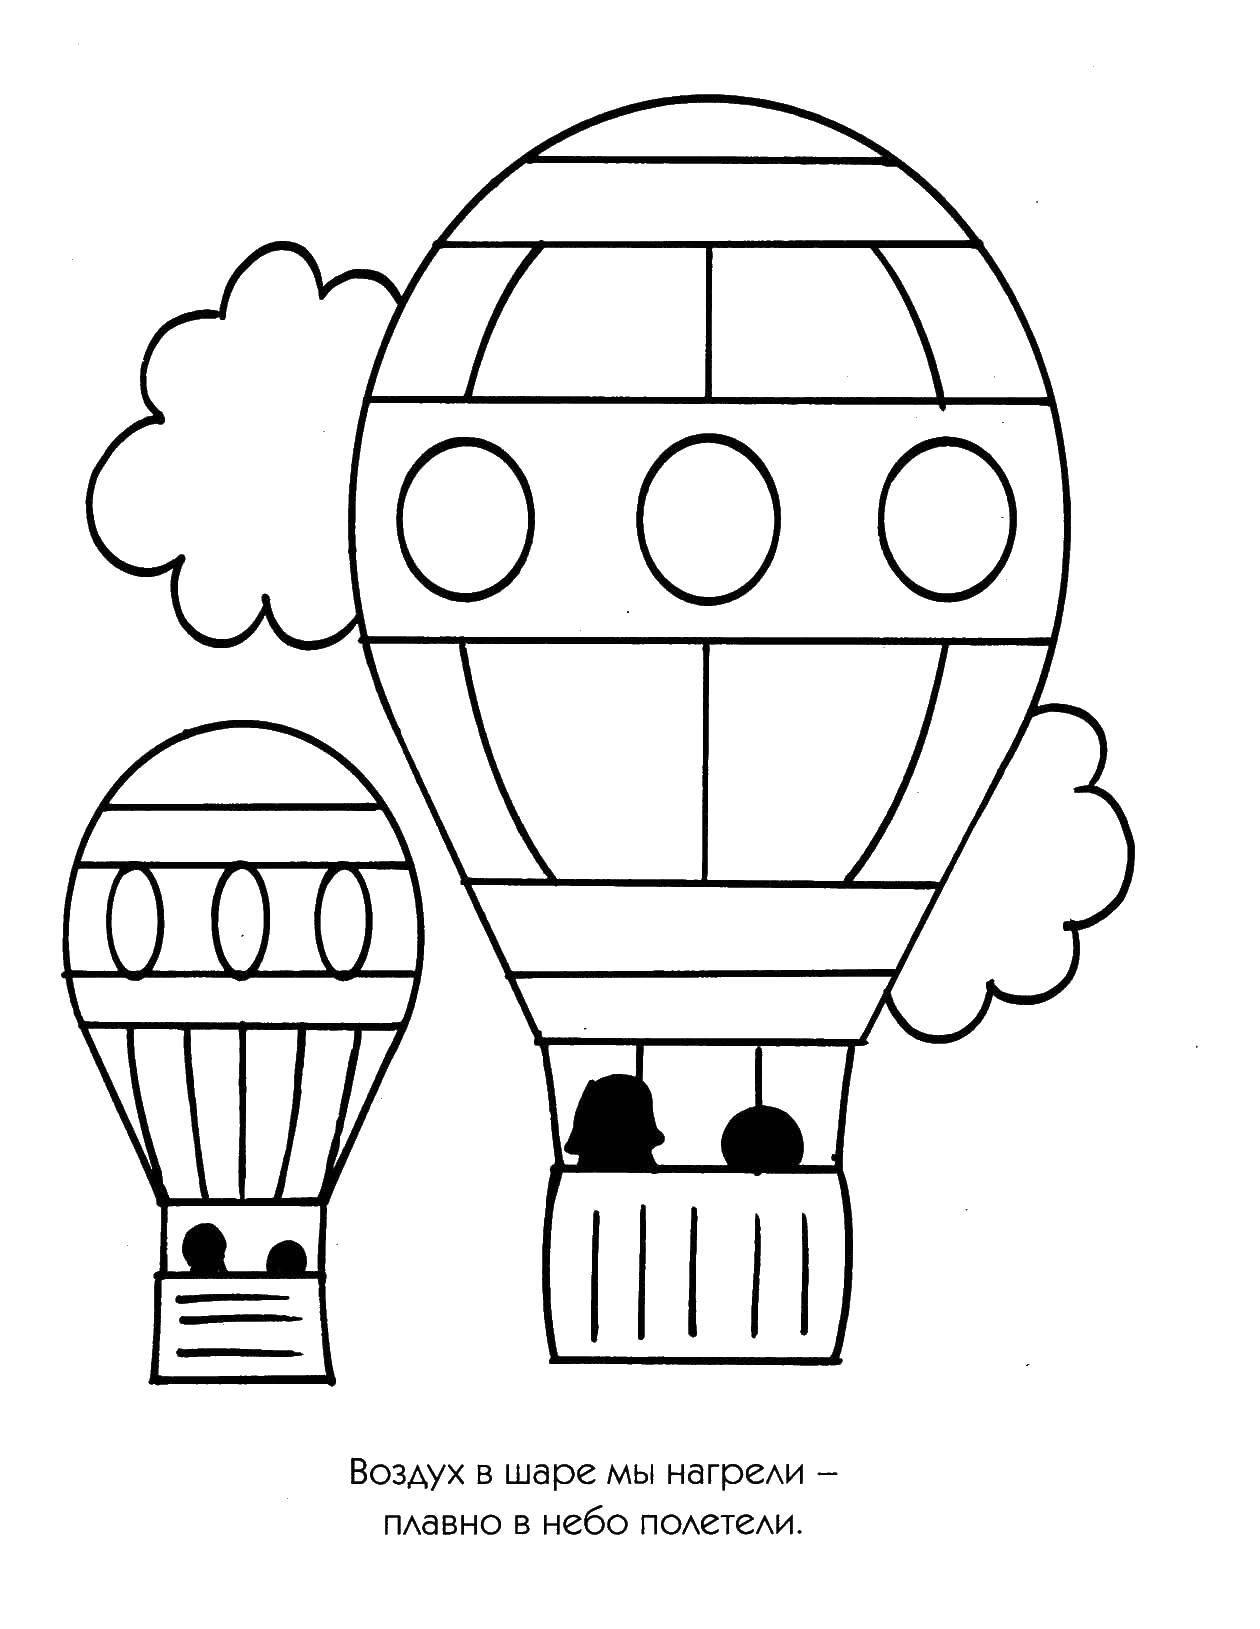 Название: Раскраска Люди на воздушном шаре. Категория: летательные аппараты. Теги: воздушный шар.